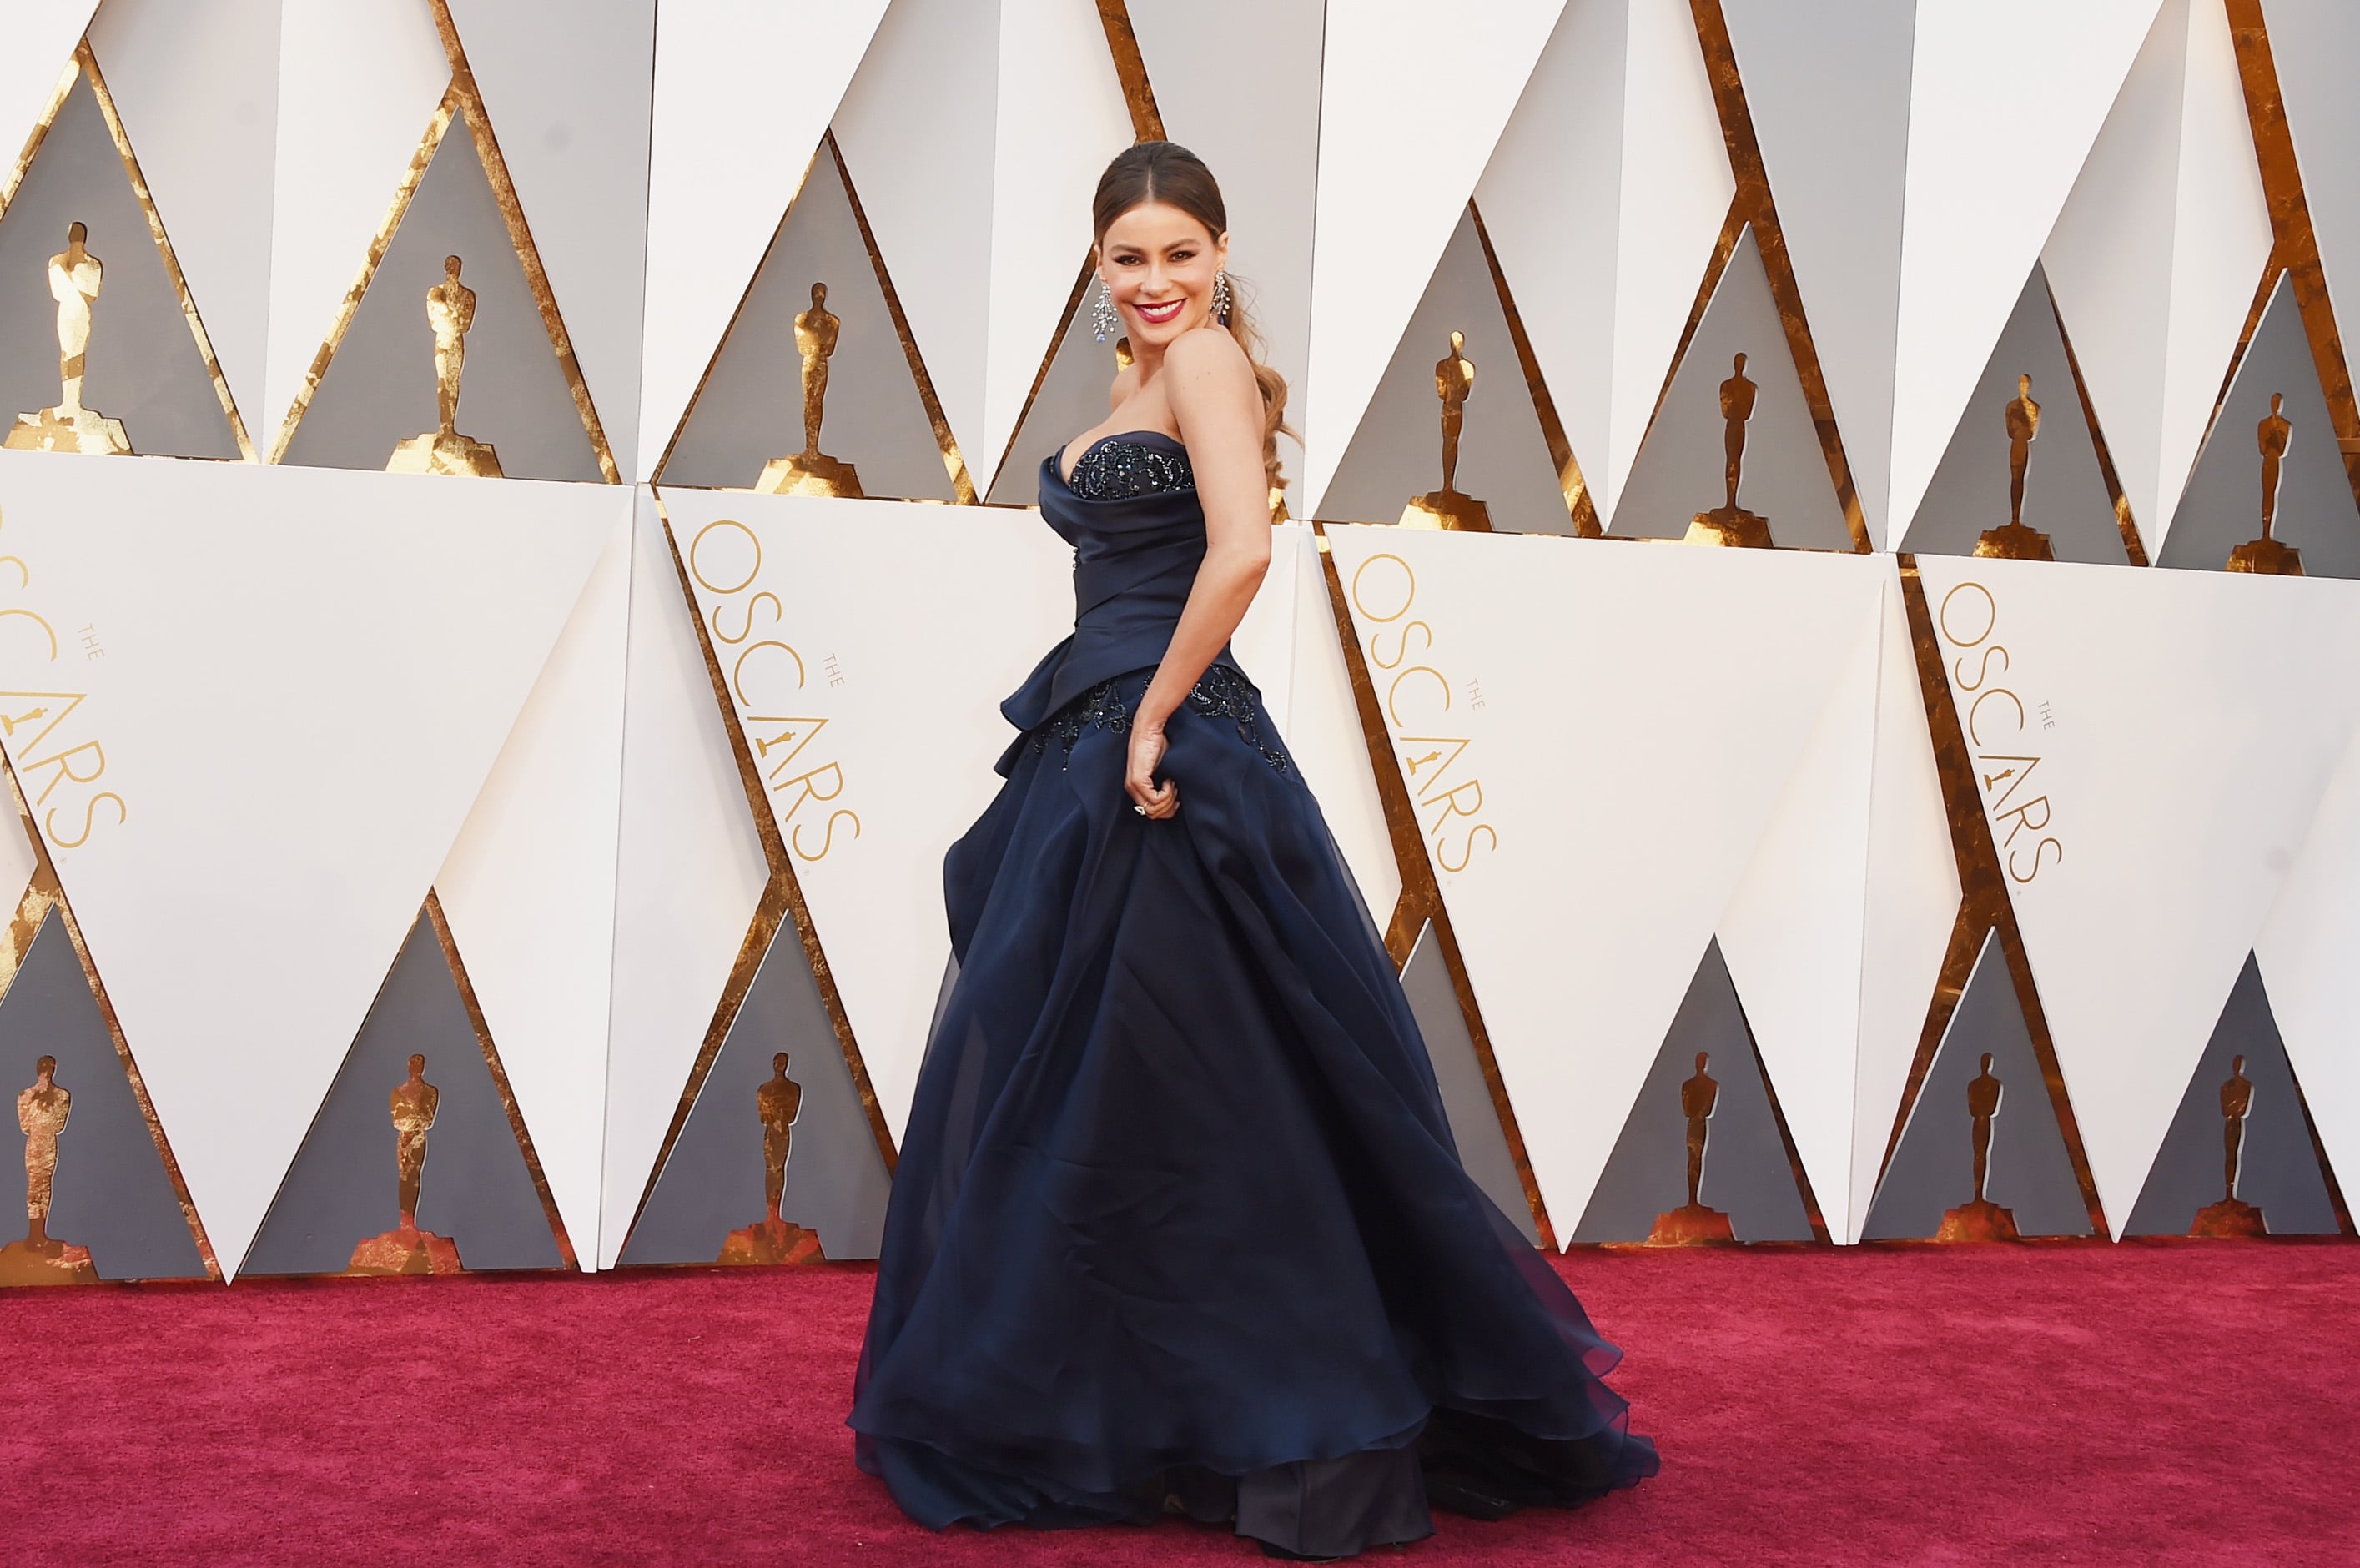 Sofia-Vergara-Oscars-2016-Red-Carpet-Louis-Vuitton-Vogue-28Feb16-Getty_b